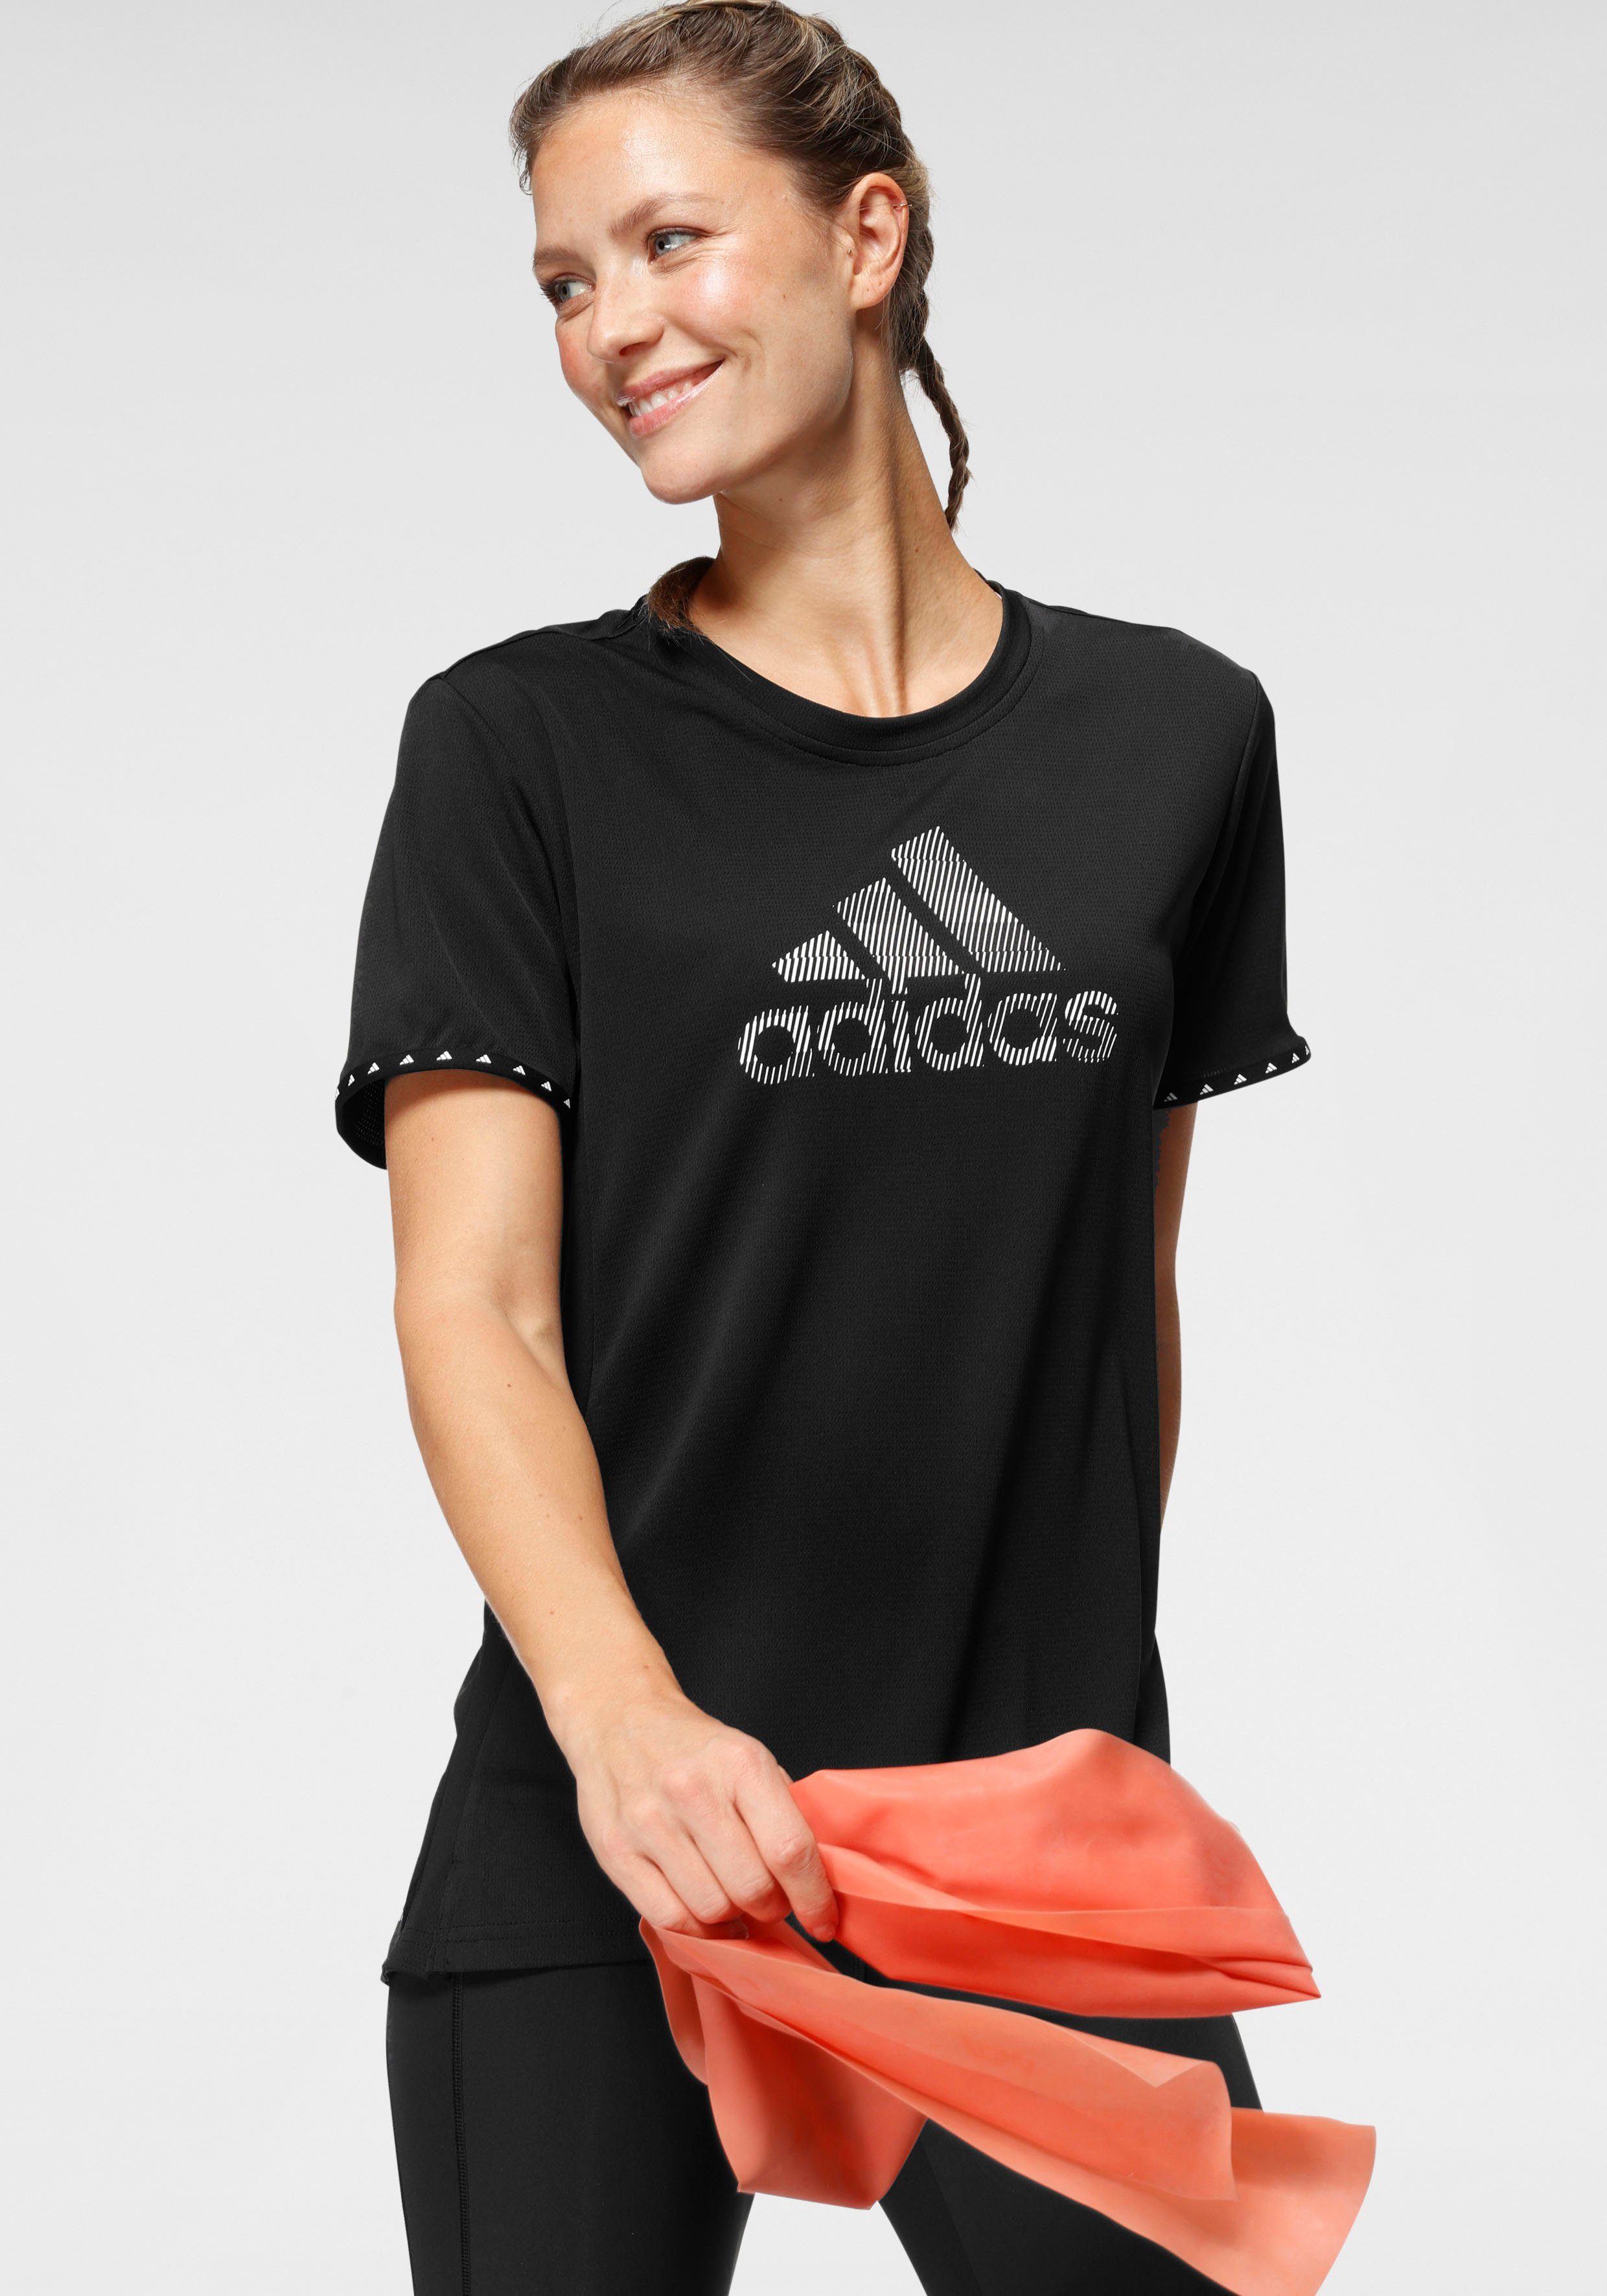 adidas Performance Sportshirts für Damen online kaufen | OTTO